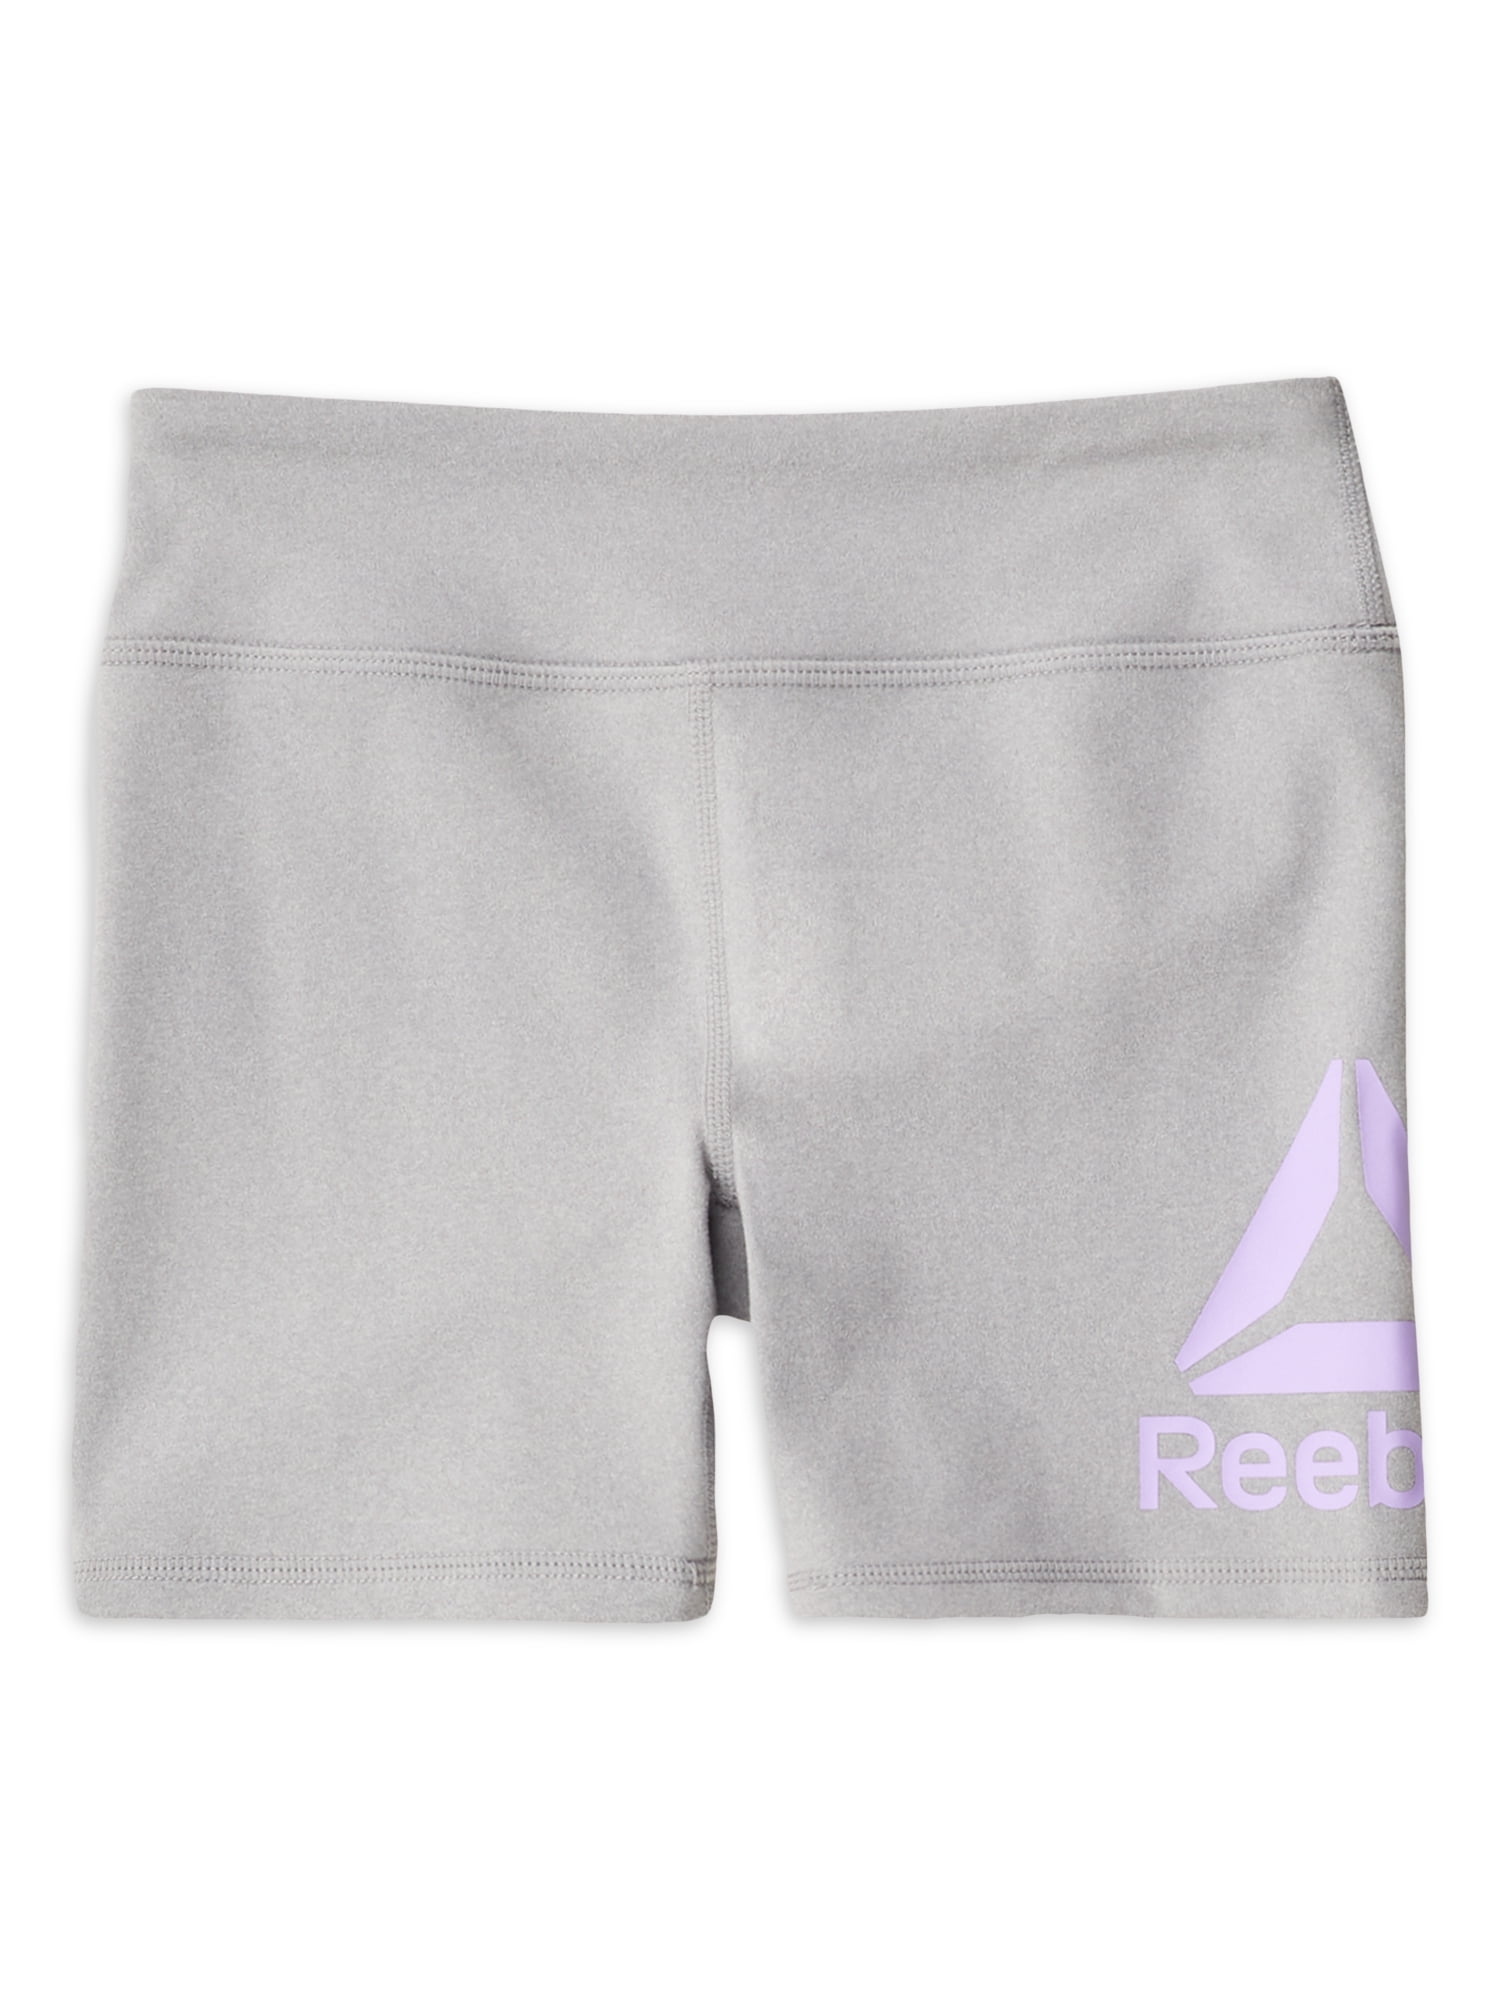 4 Pack Reebok Girls Active Seamless Cartwheel Shorts